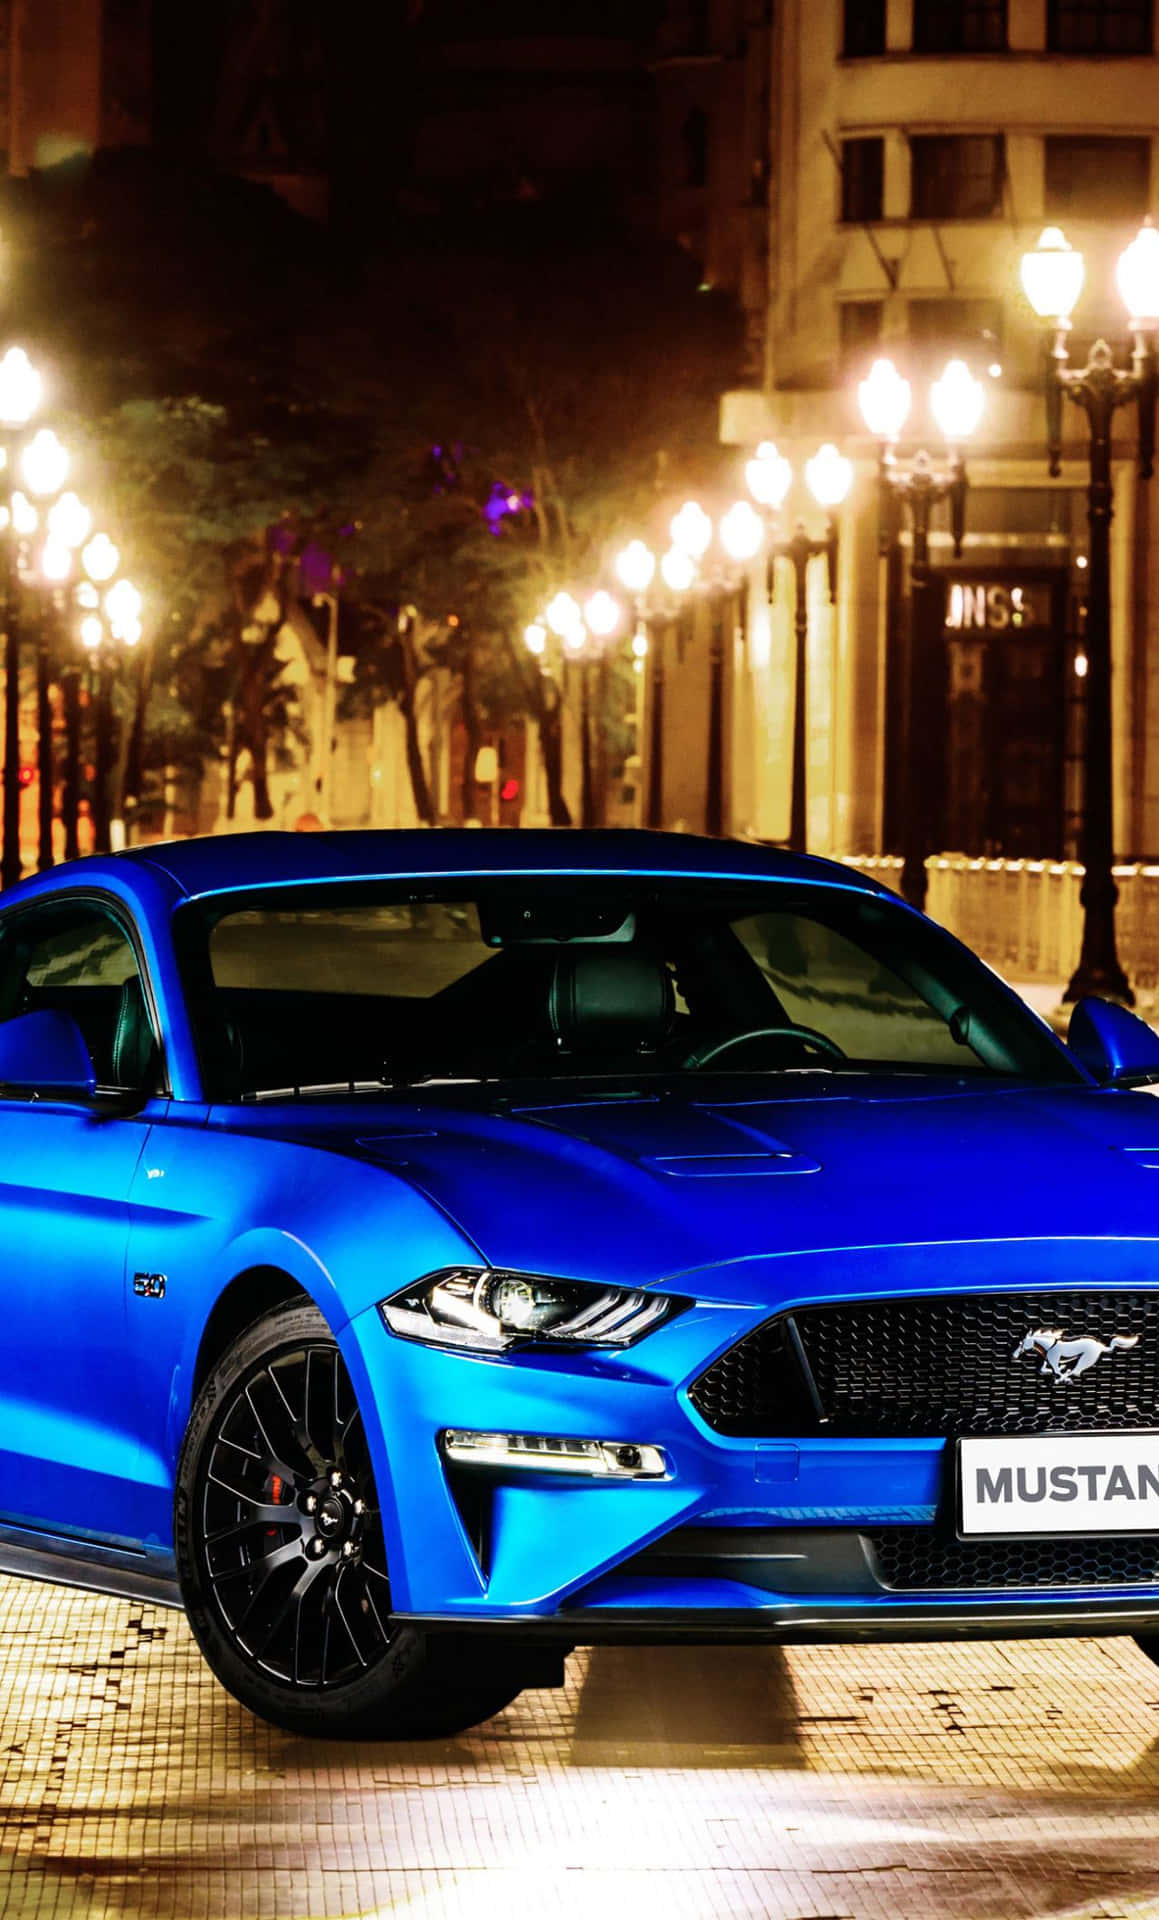 Oford Mustang Gt Azul De 2019 Está Estacionado Em Uma Rua Da Cidade. Papel de Parede